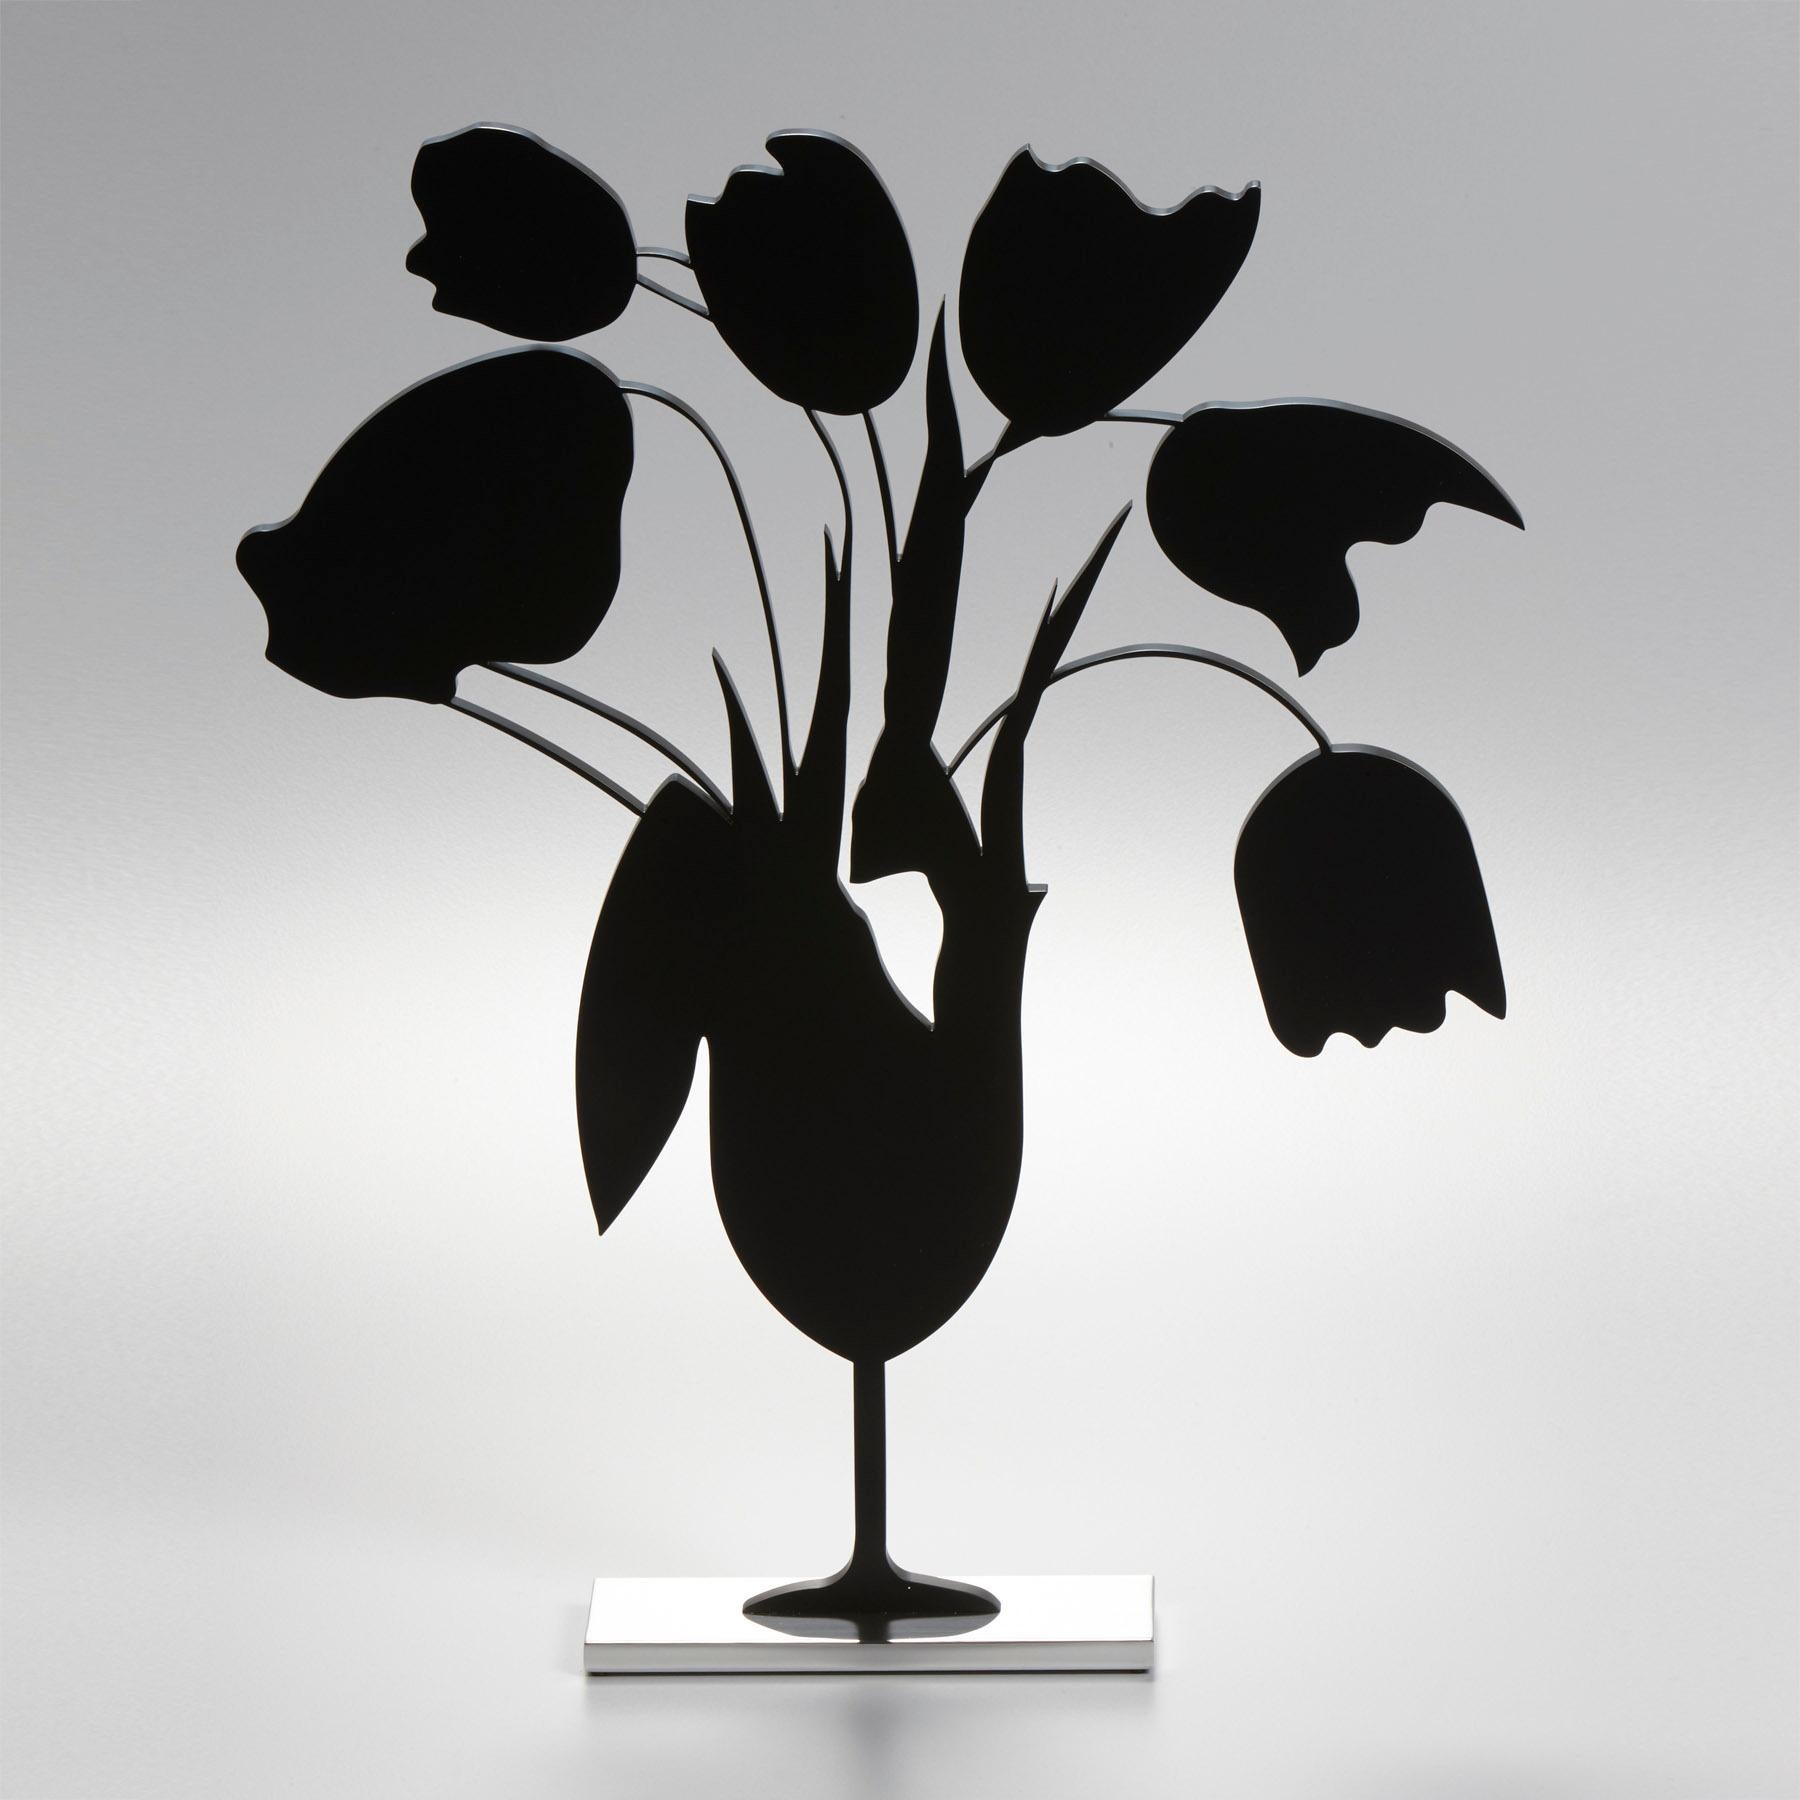 Figurative Sculpture Donald Sultan - Tulipes noires et vase, 5 avril - Contemporain, 21e siècle, Sculpture, Noir 